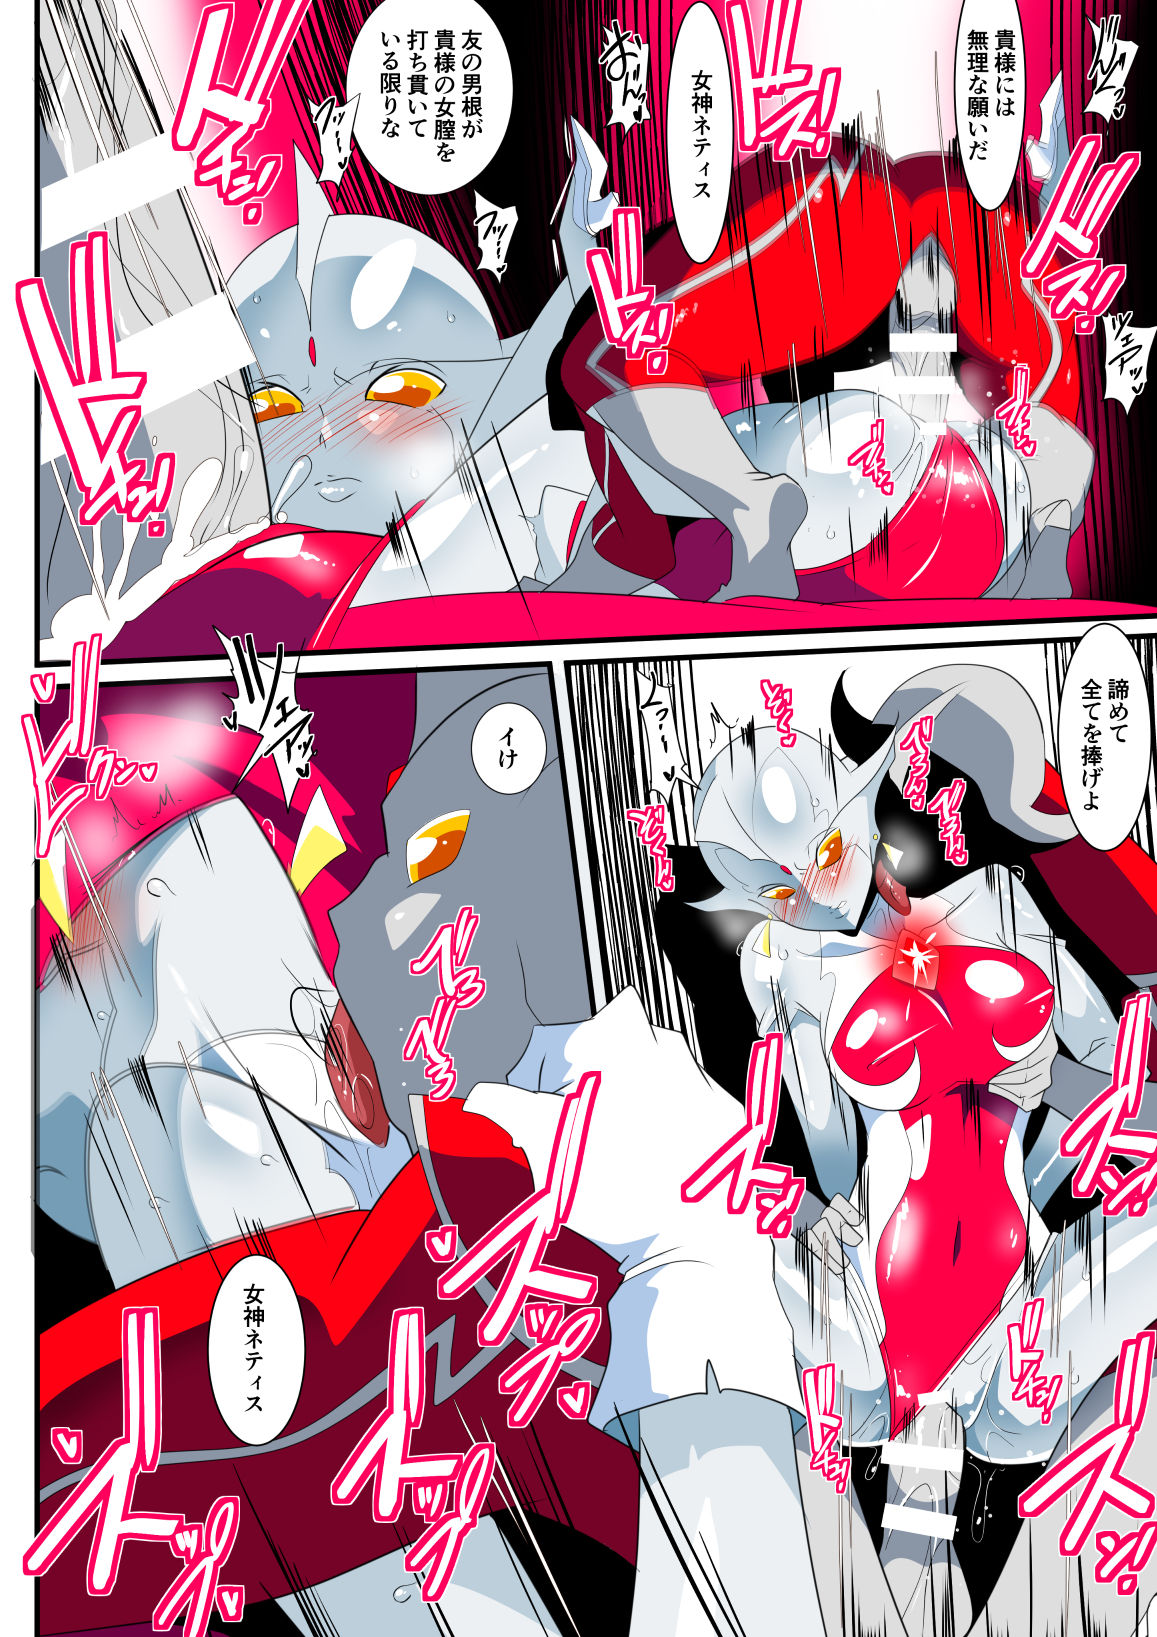 [Warabimochi] Ginga no Megami Netise IX (Ultraman) page 14 full